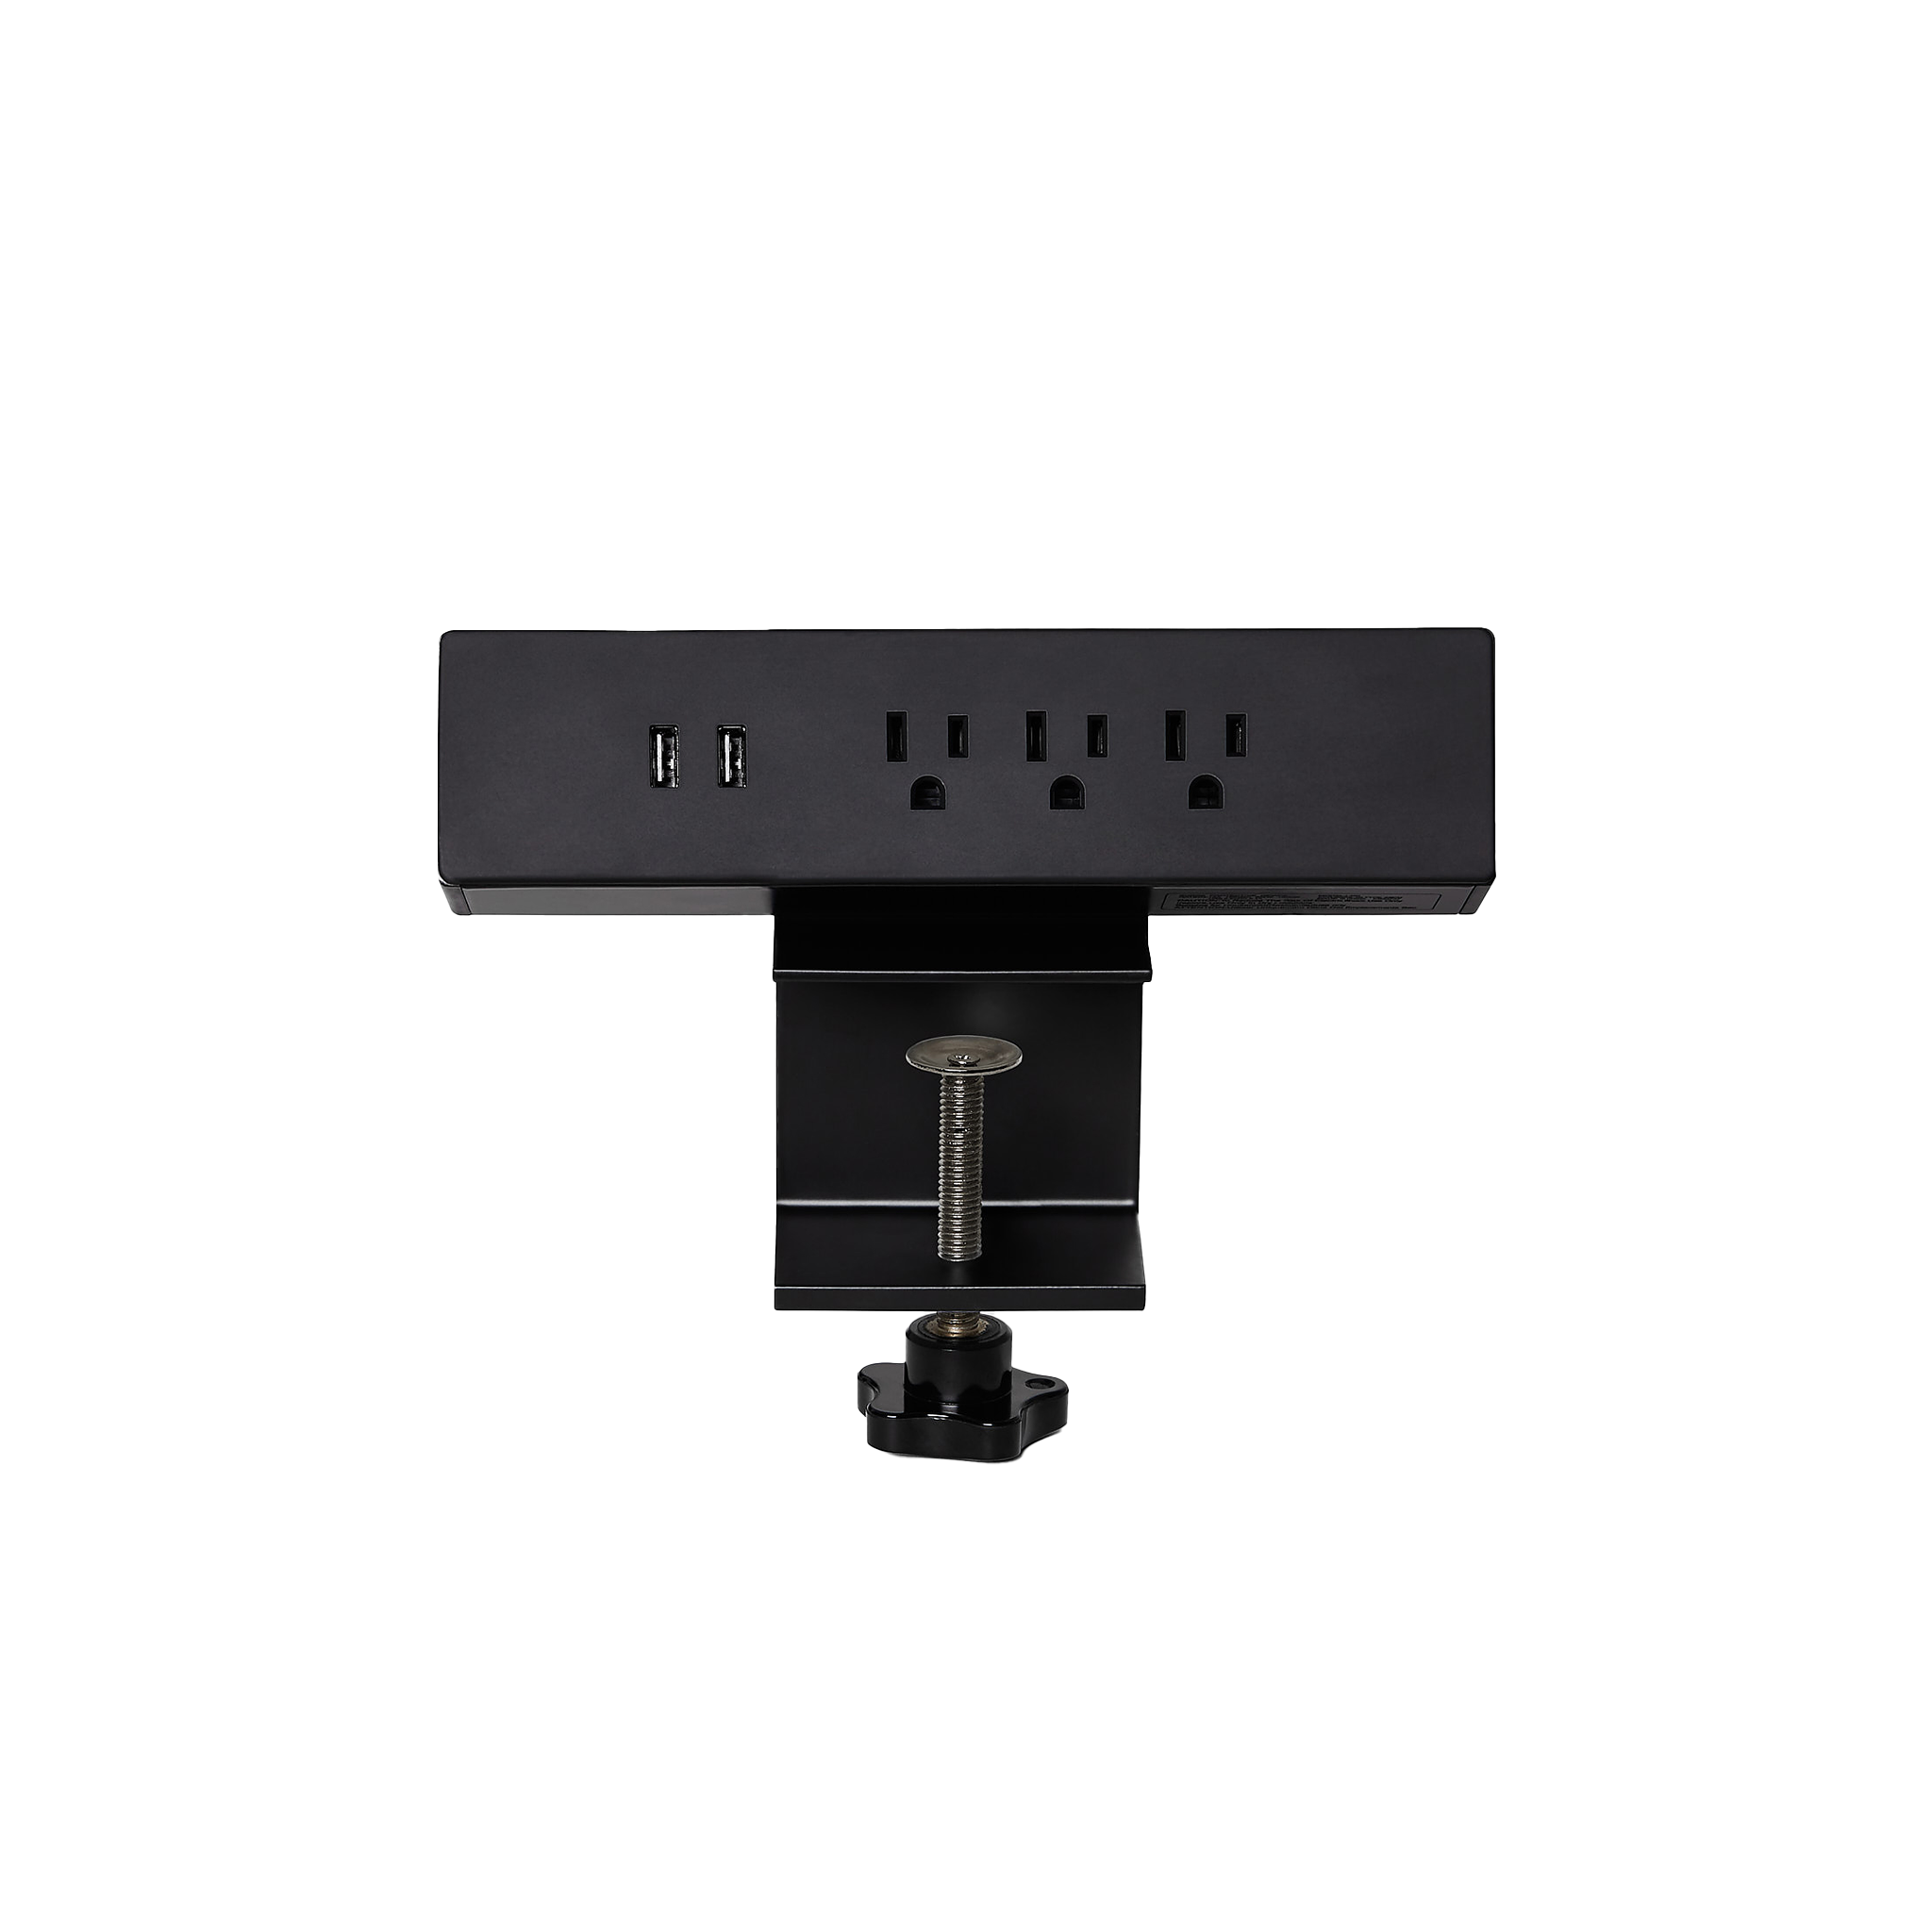 Almost Perfect Power bar outlet - Black-On desk - Noire-Sur bureau